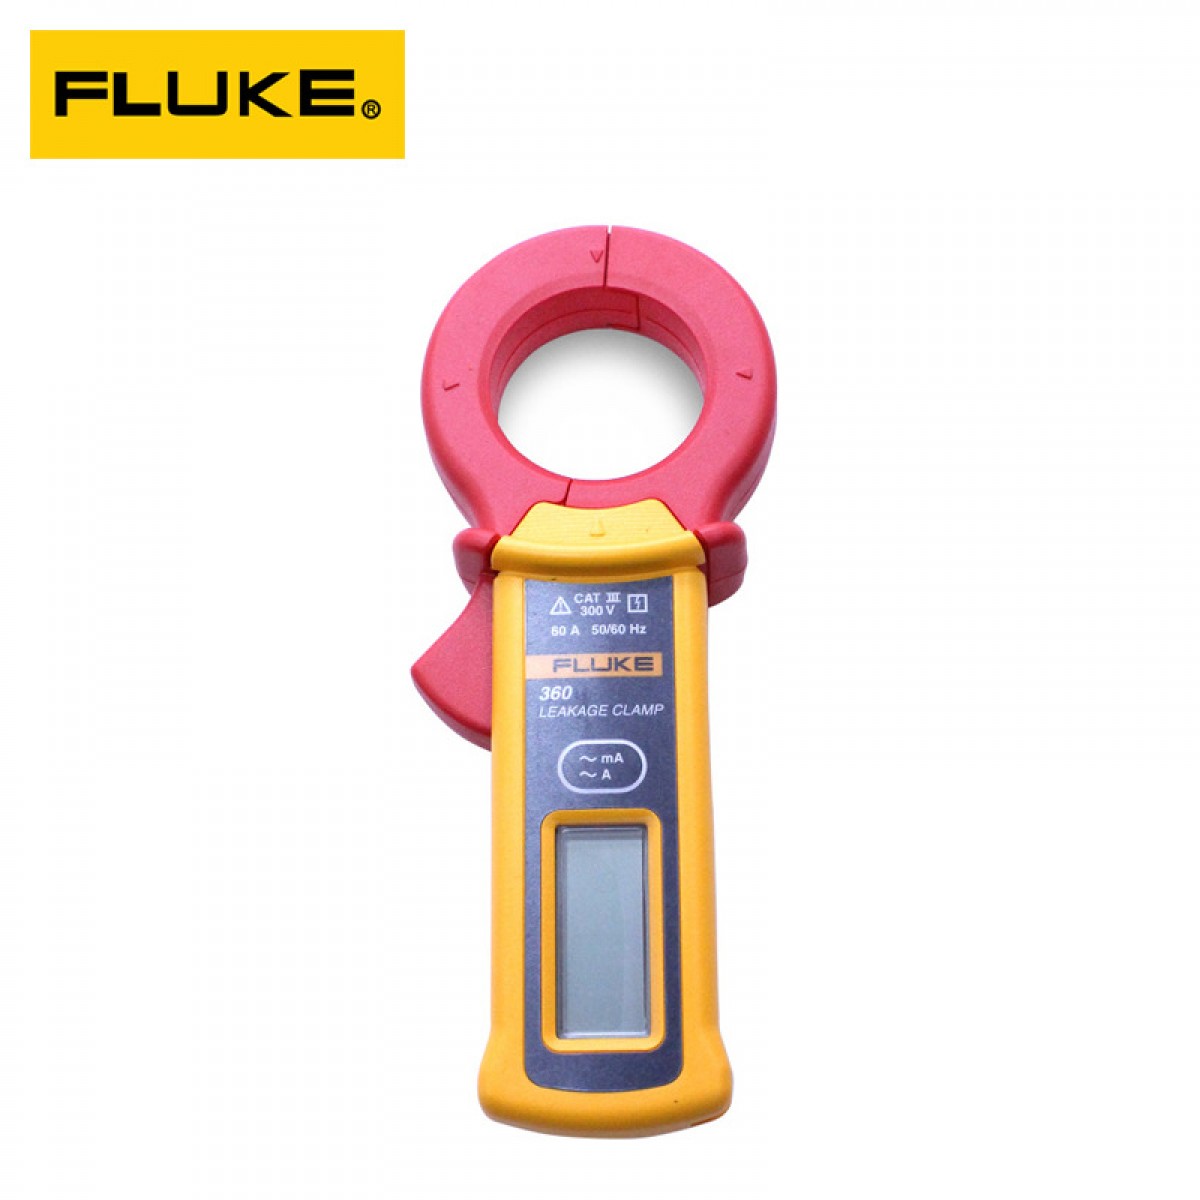 FLUKE F360 钳形泄电流表